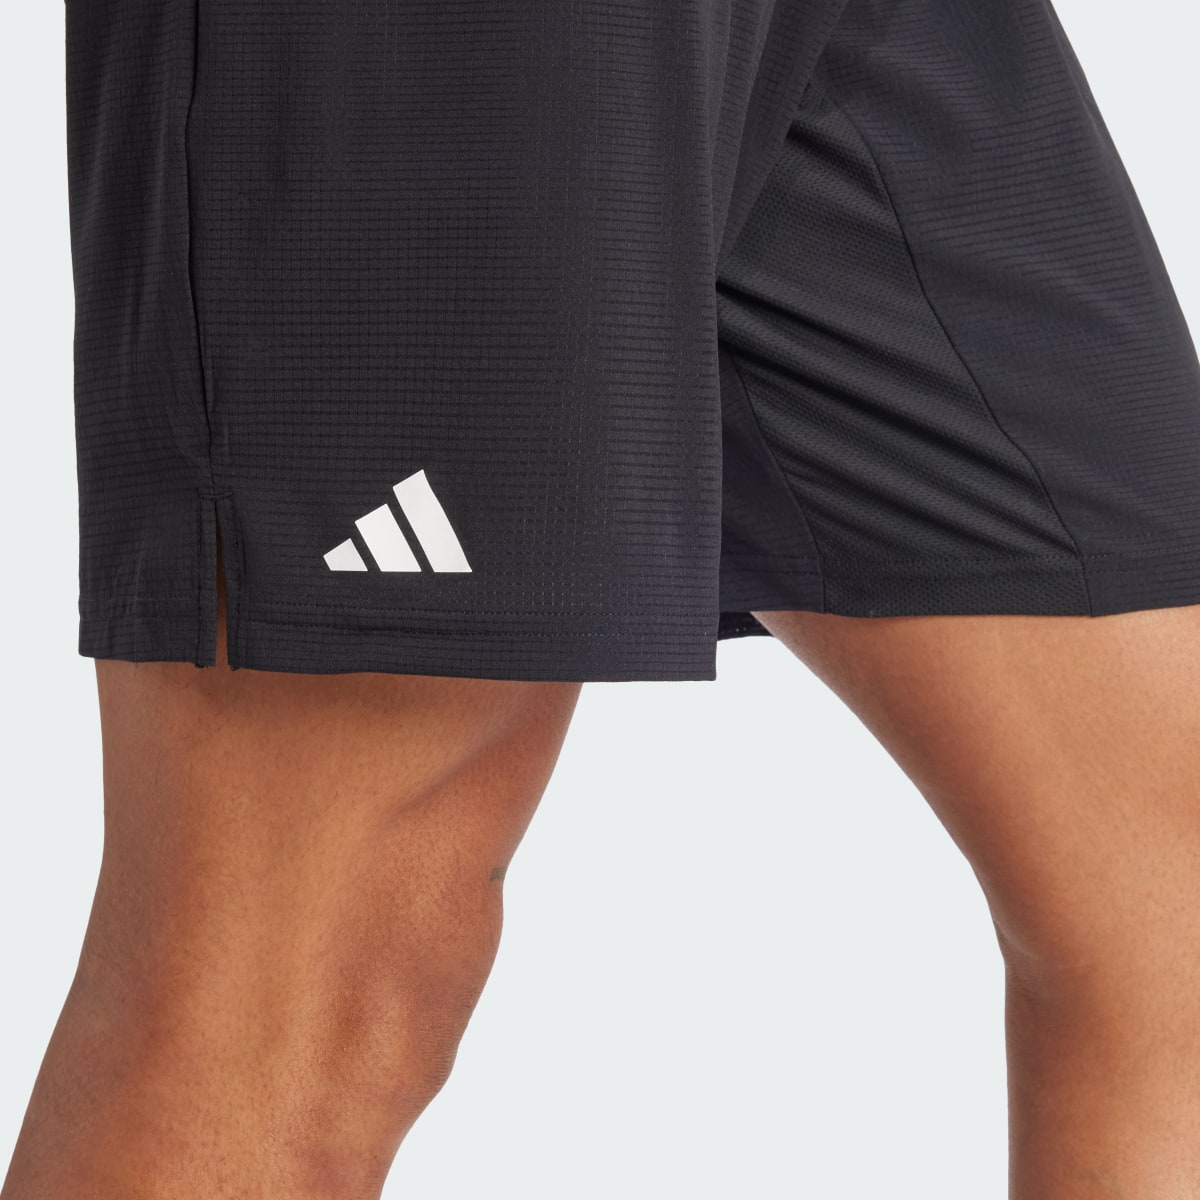 Adidas Tennis Ergo Shorts. 8